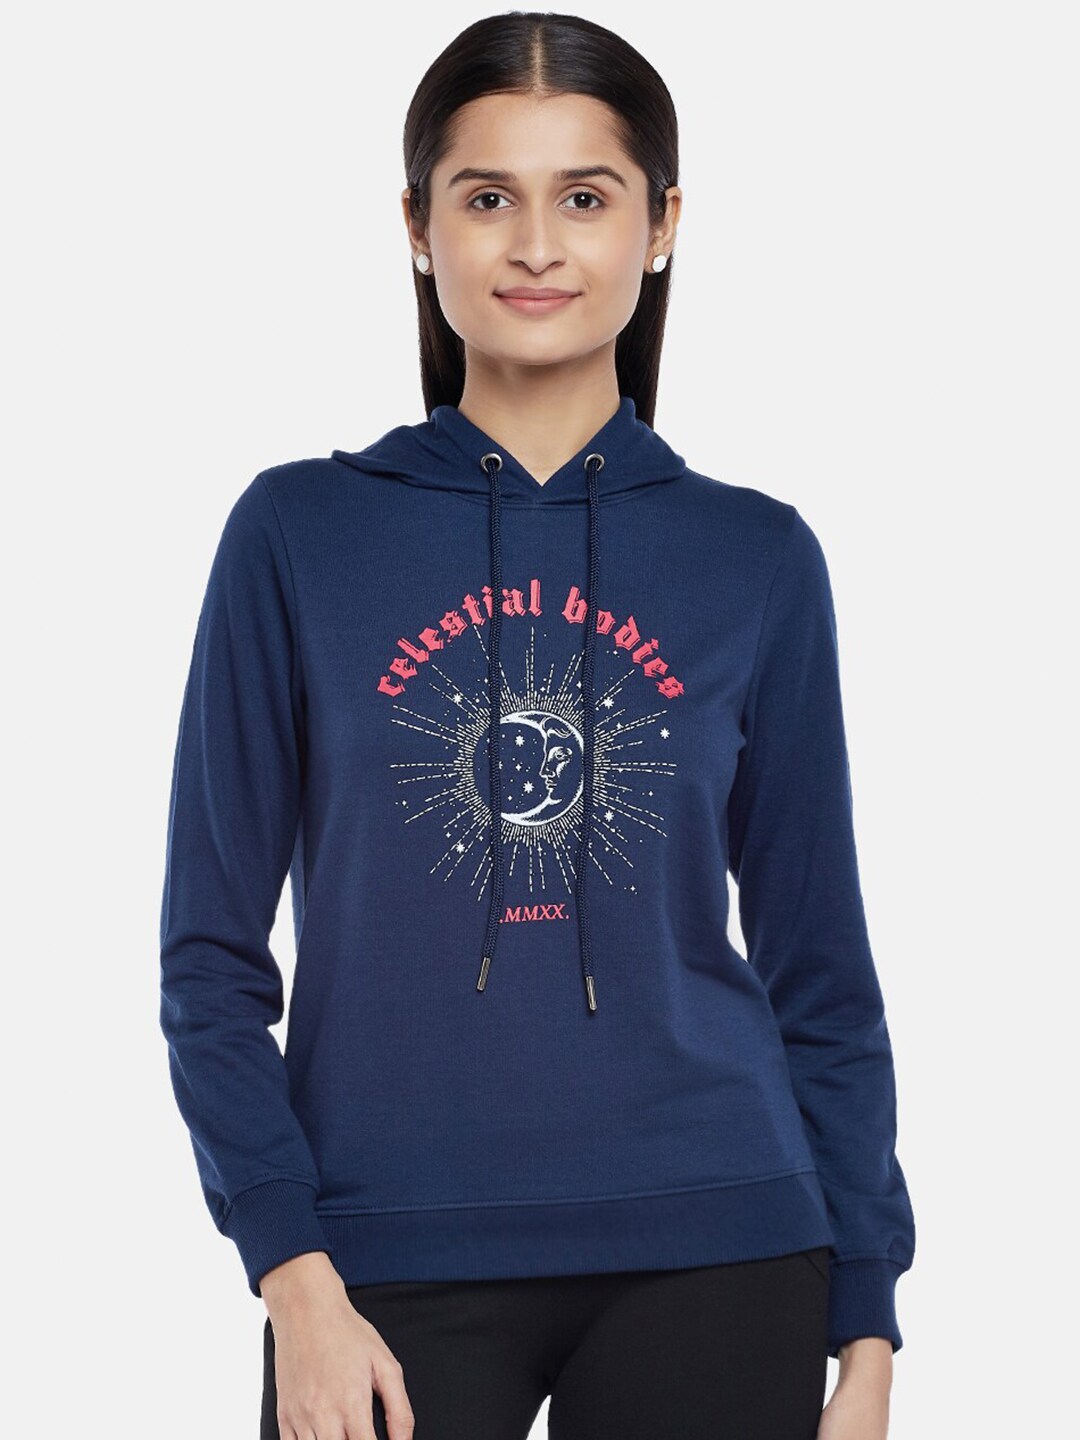 People Women Navy Blue & White Printed Hooded Sweatshirt Price in India